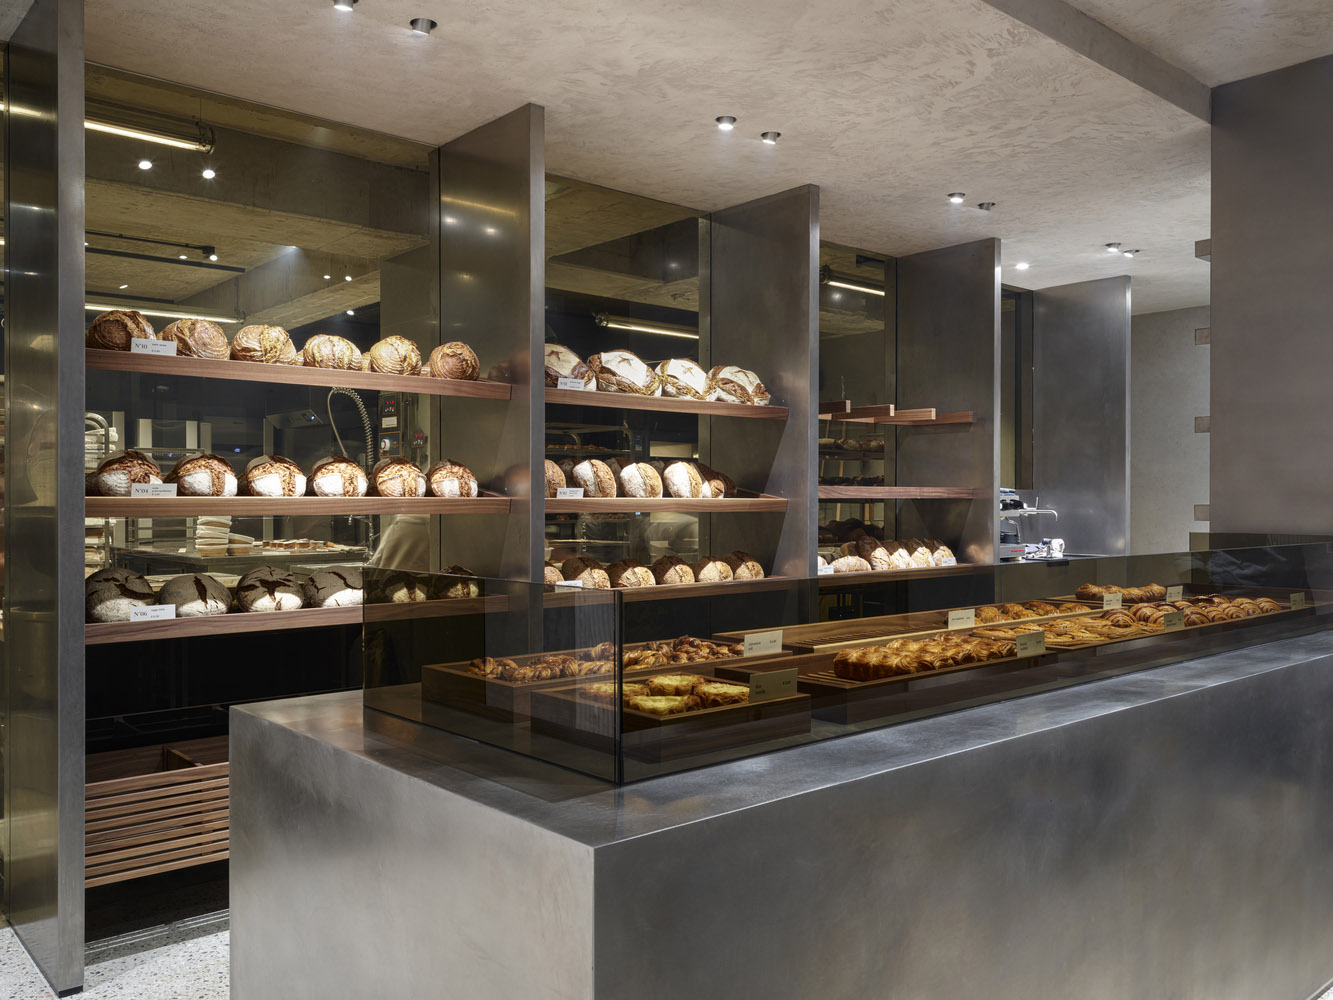 面包店设计,面包店设计案例,国外面包店设计,烘焙店设计,比利时,Joost Arijs 面包店,124㎡,Glenn Sestig Architects